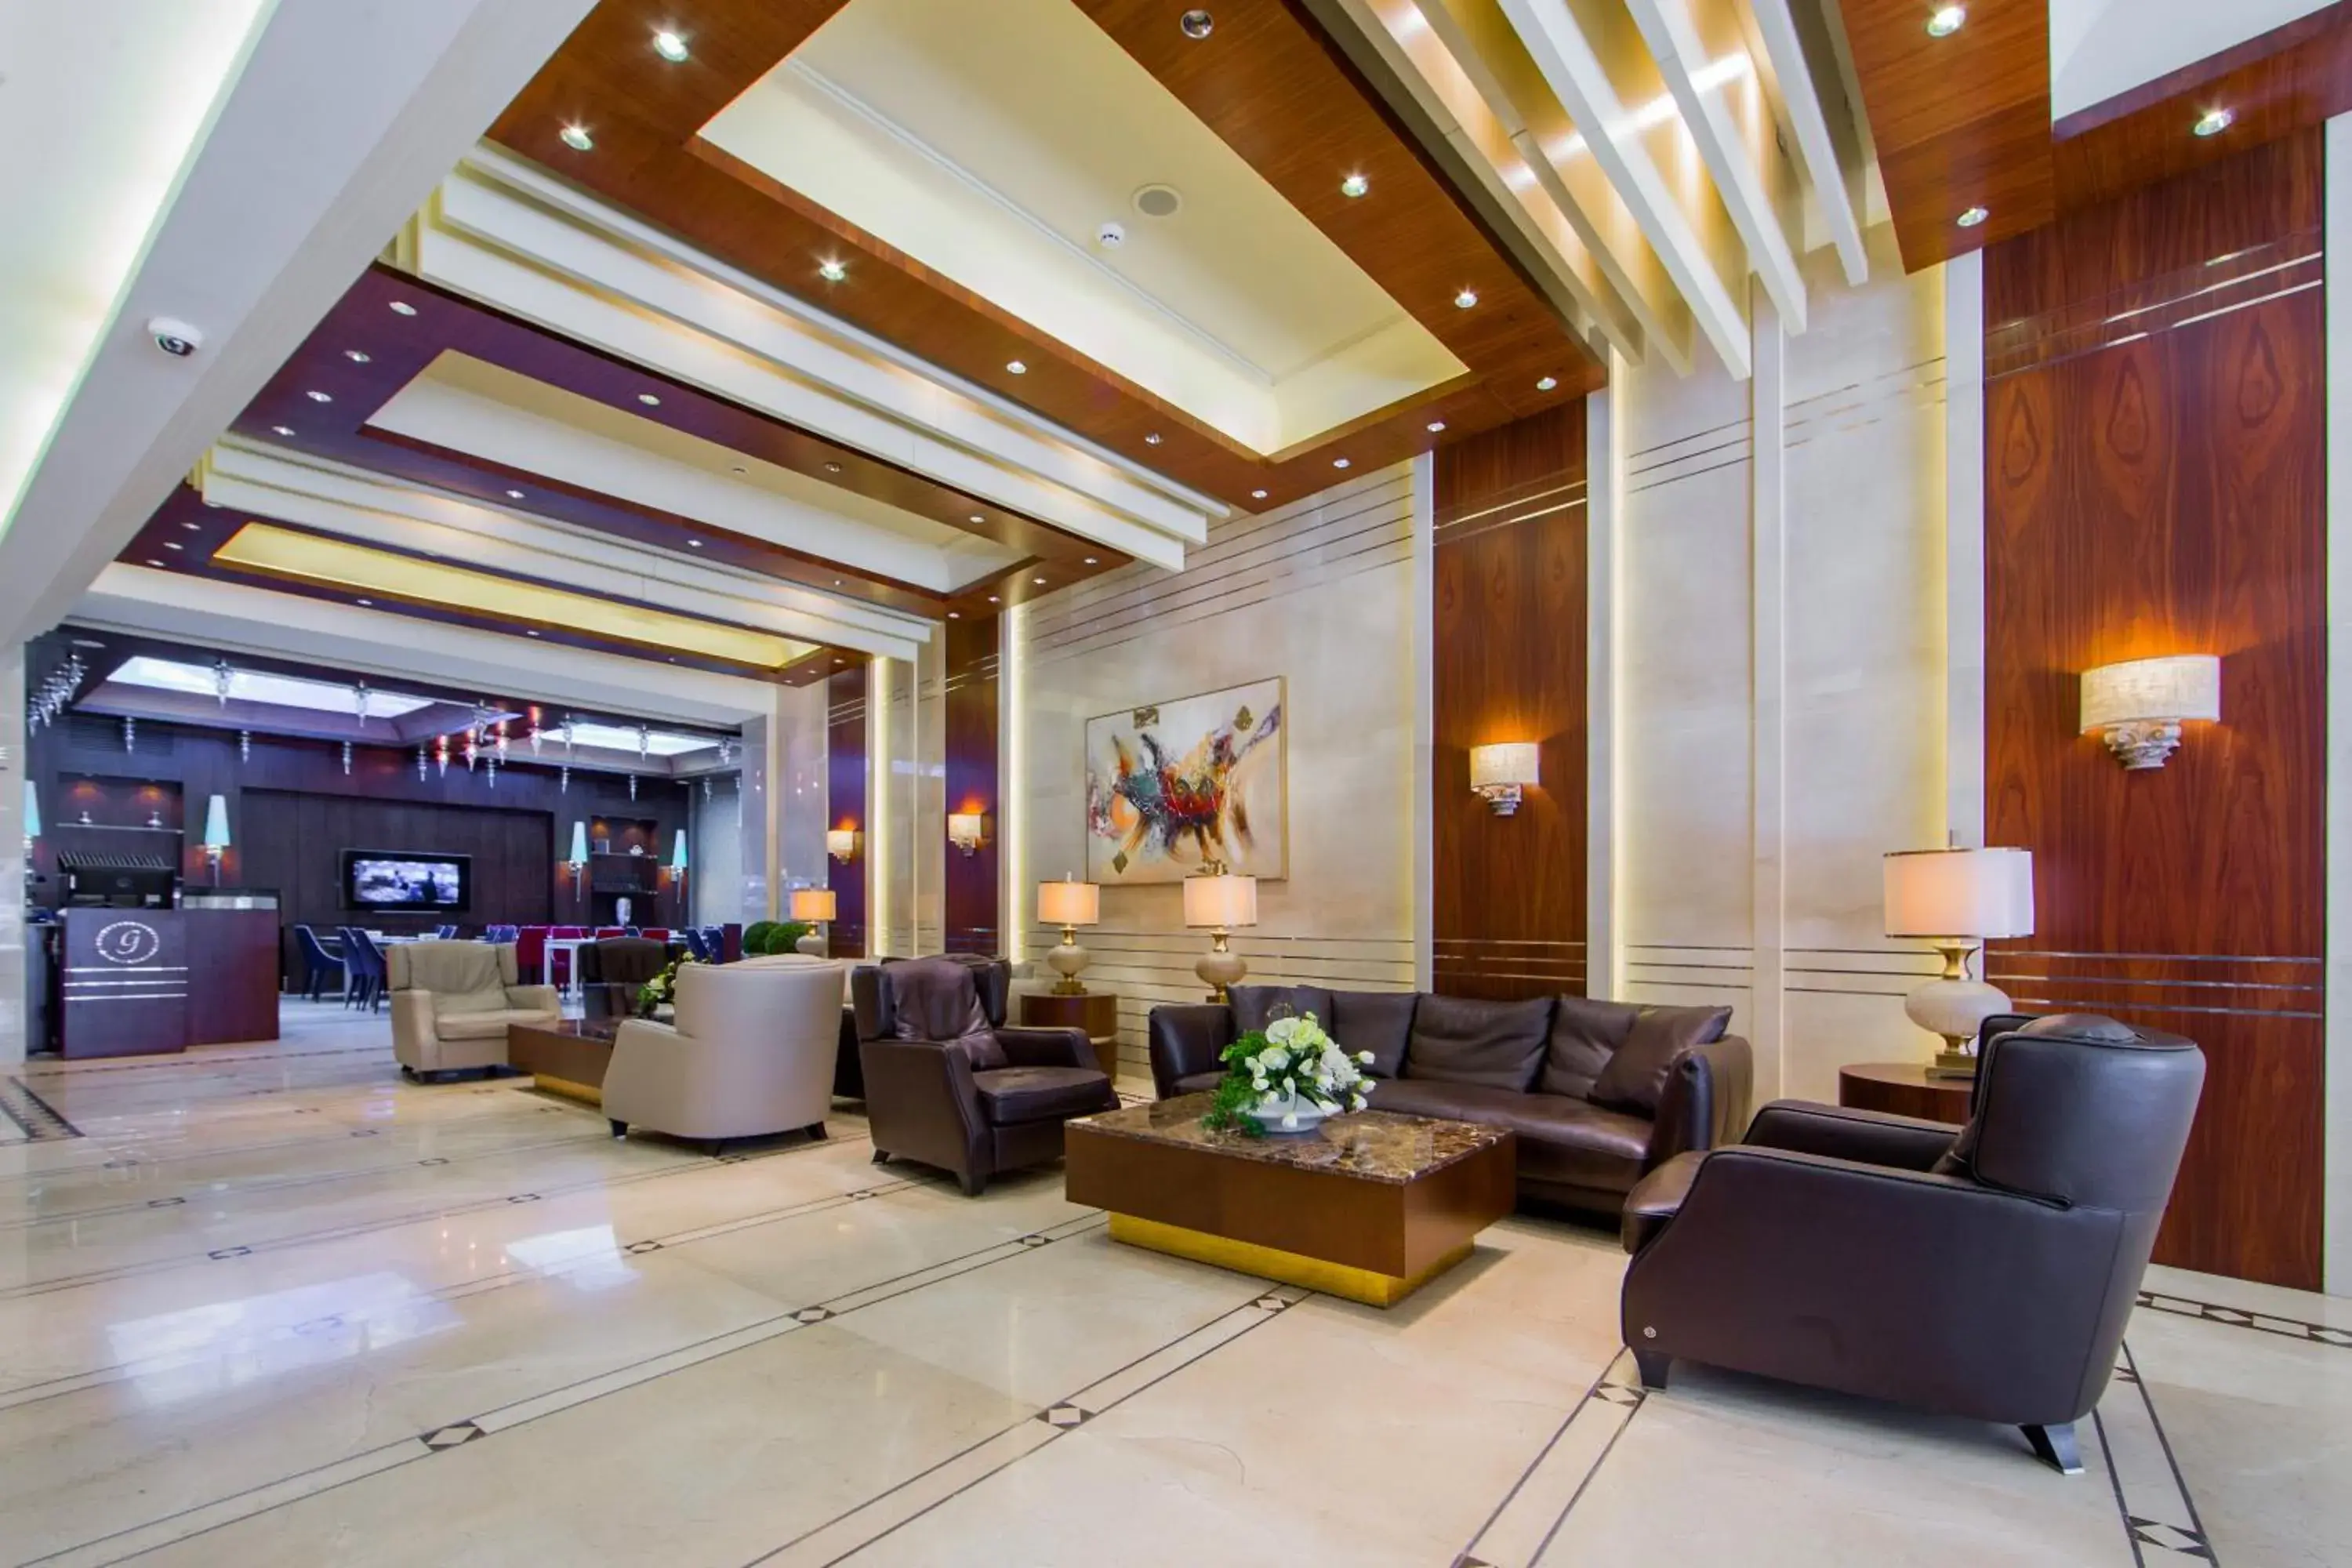 Lobby or reception, Lobby/Reception in Gems Hotel